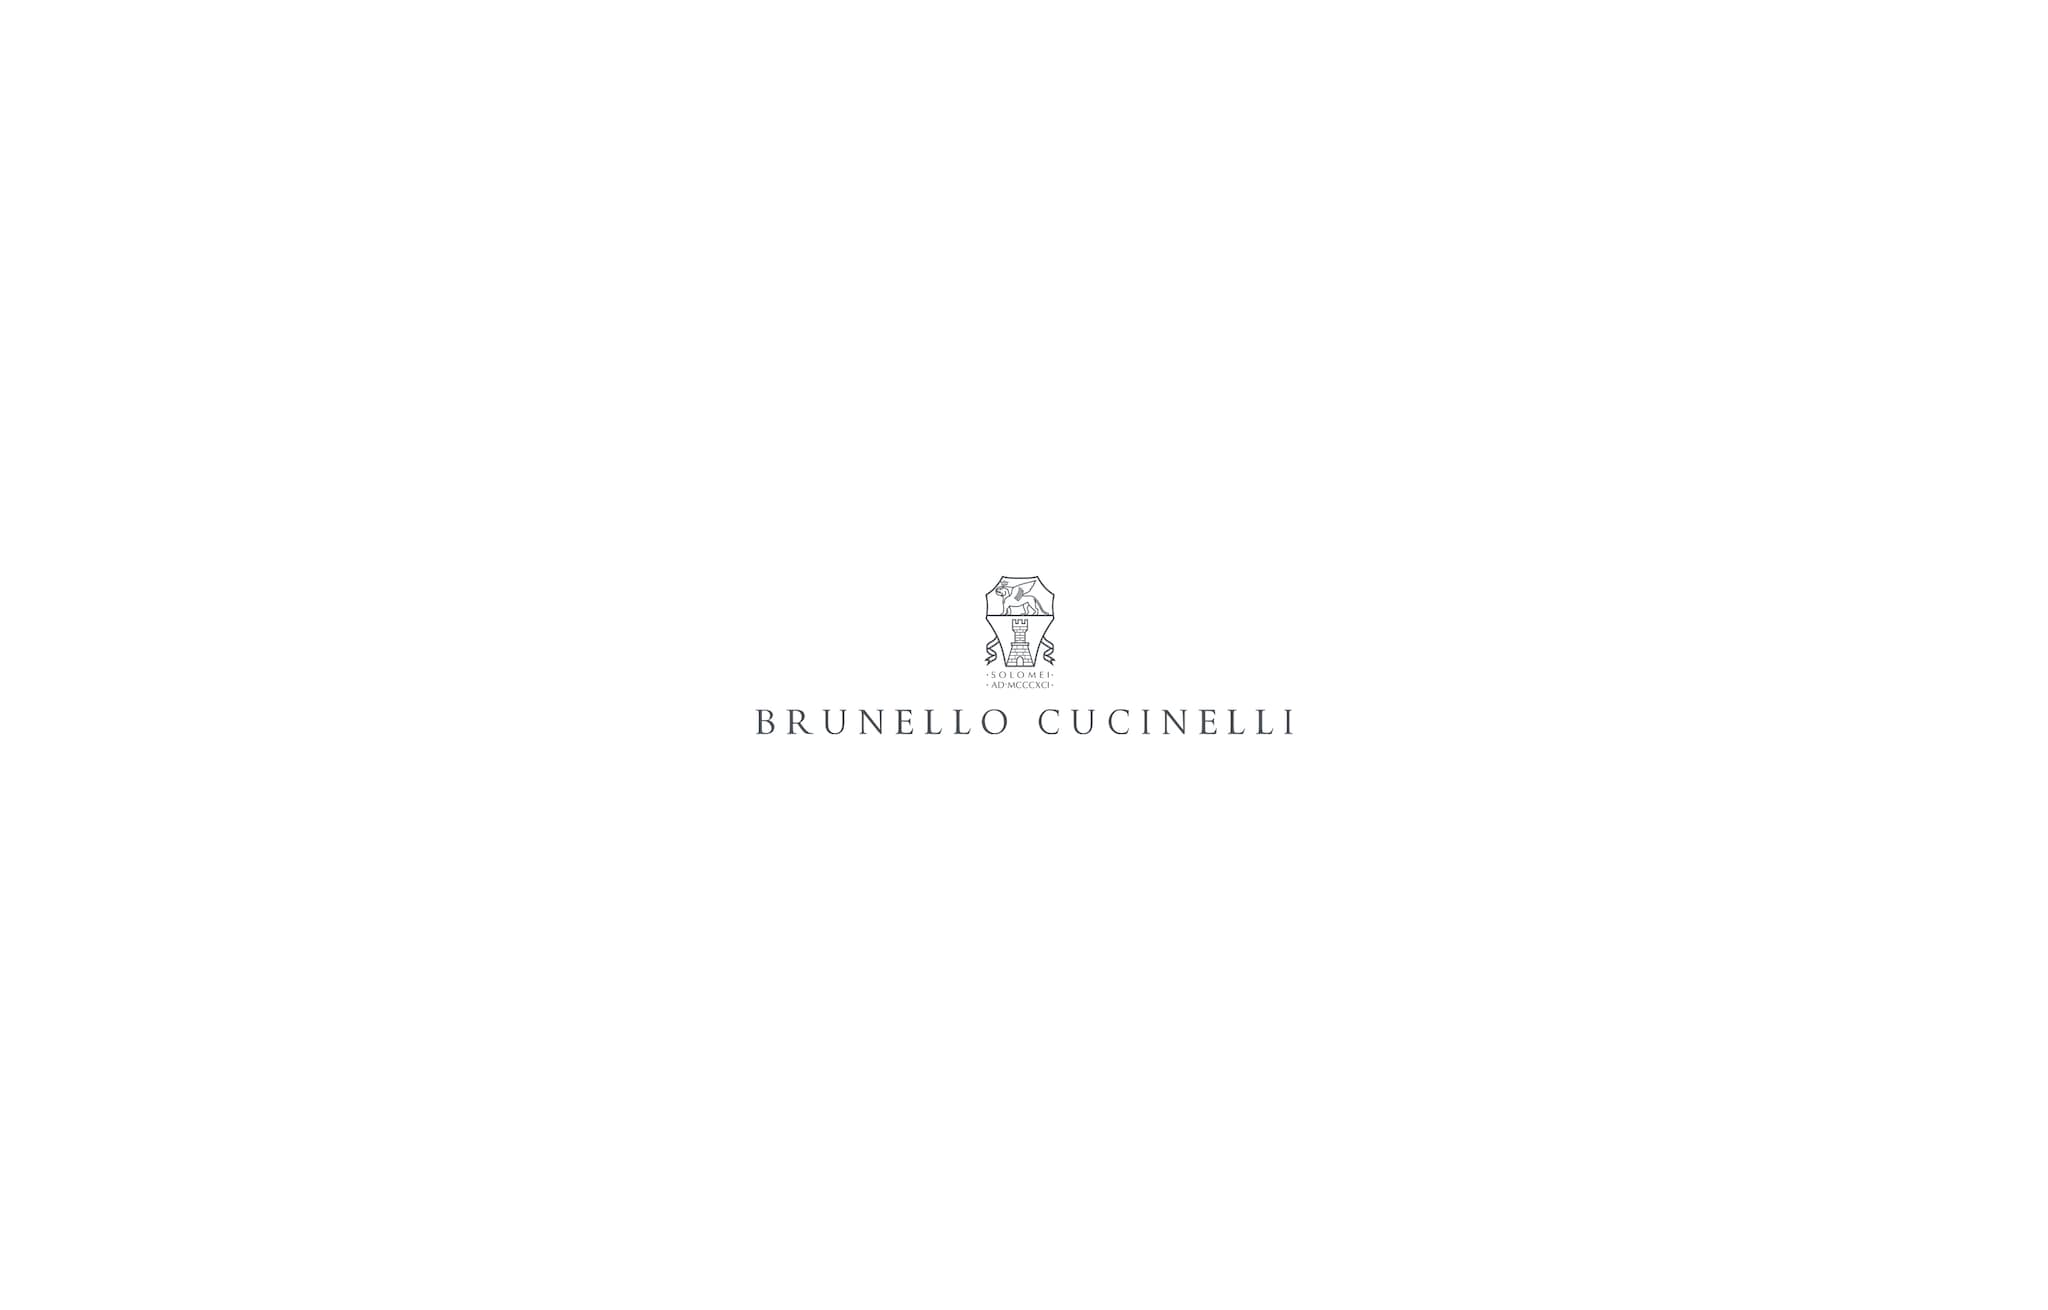  金银线麂皮风衣 银色 女款 - Brunello Cucinelli 